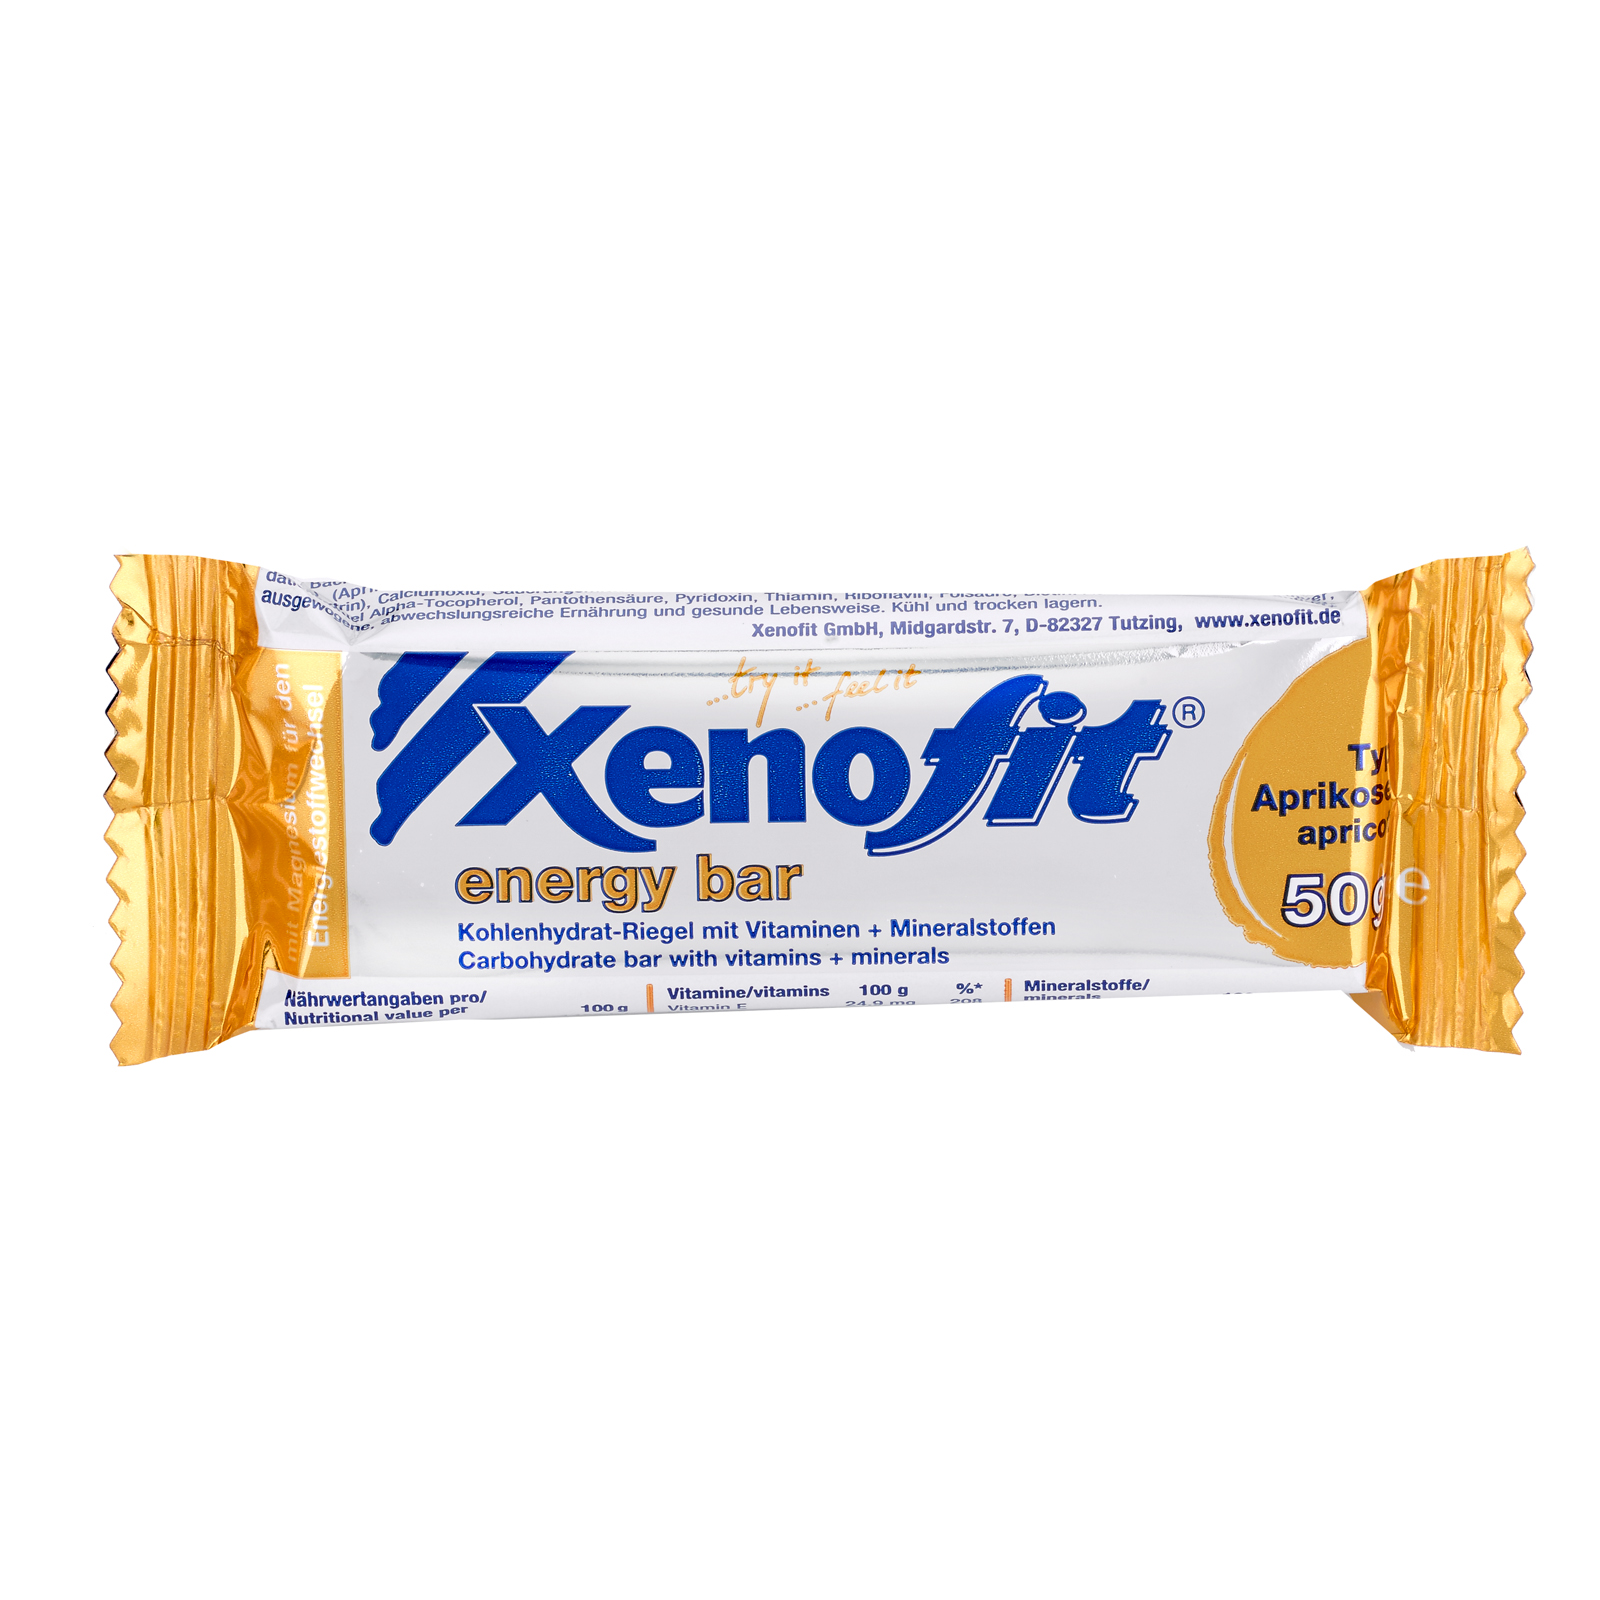 Xenofit_energy_bar_Apr